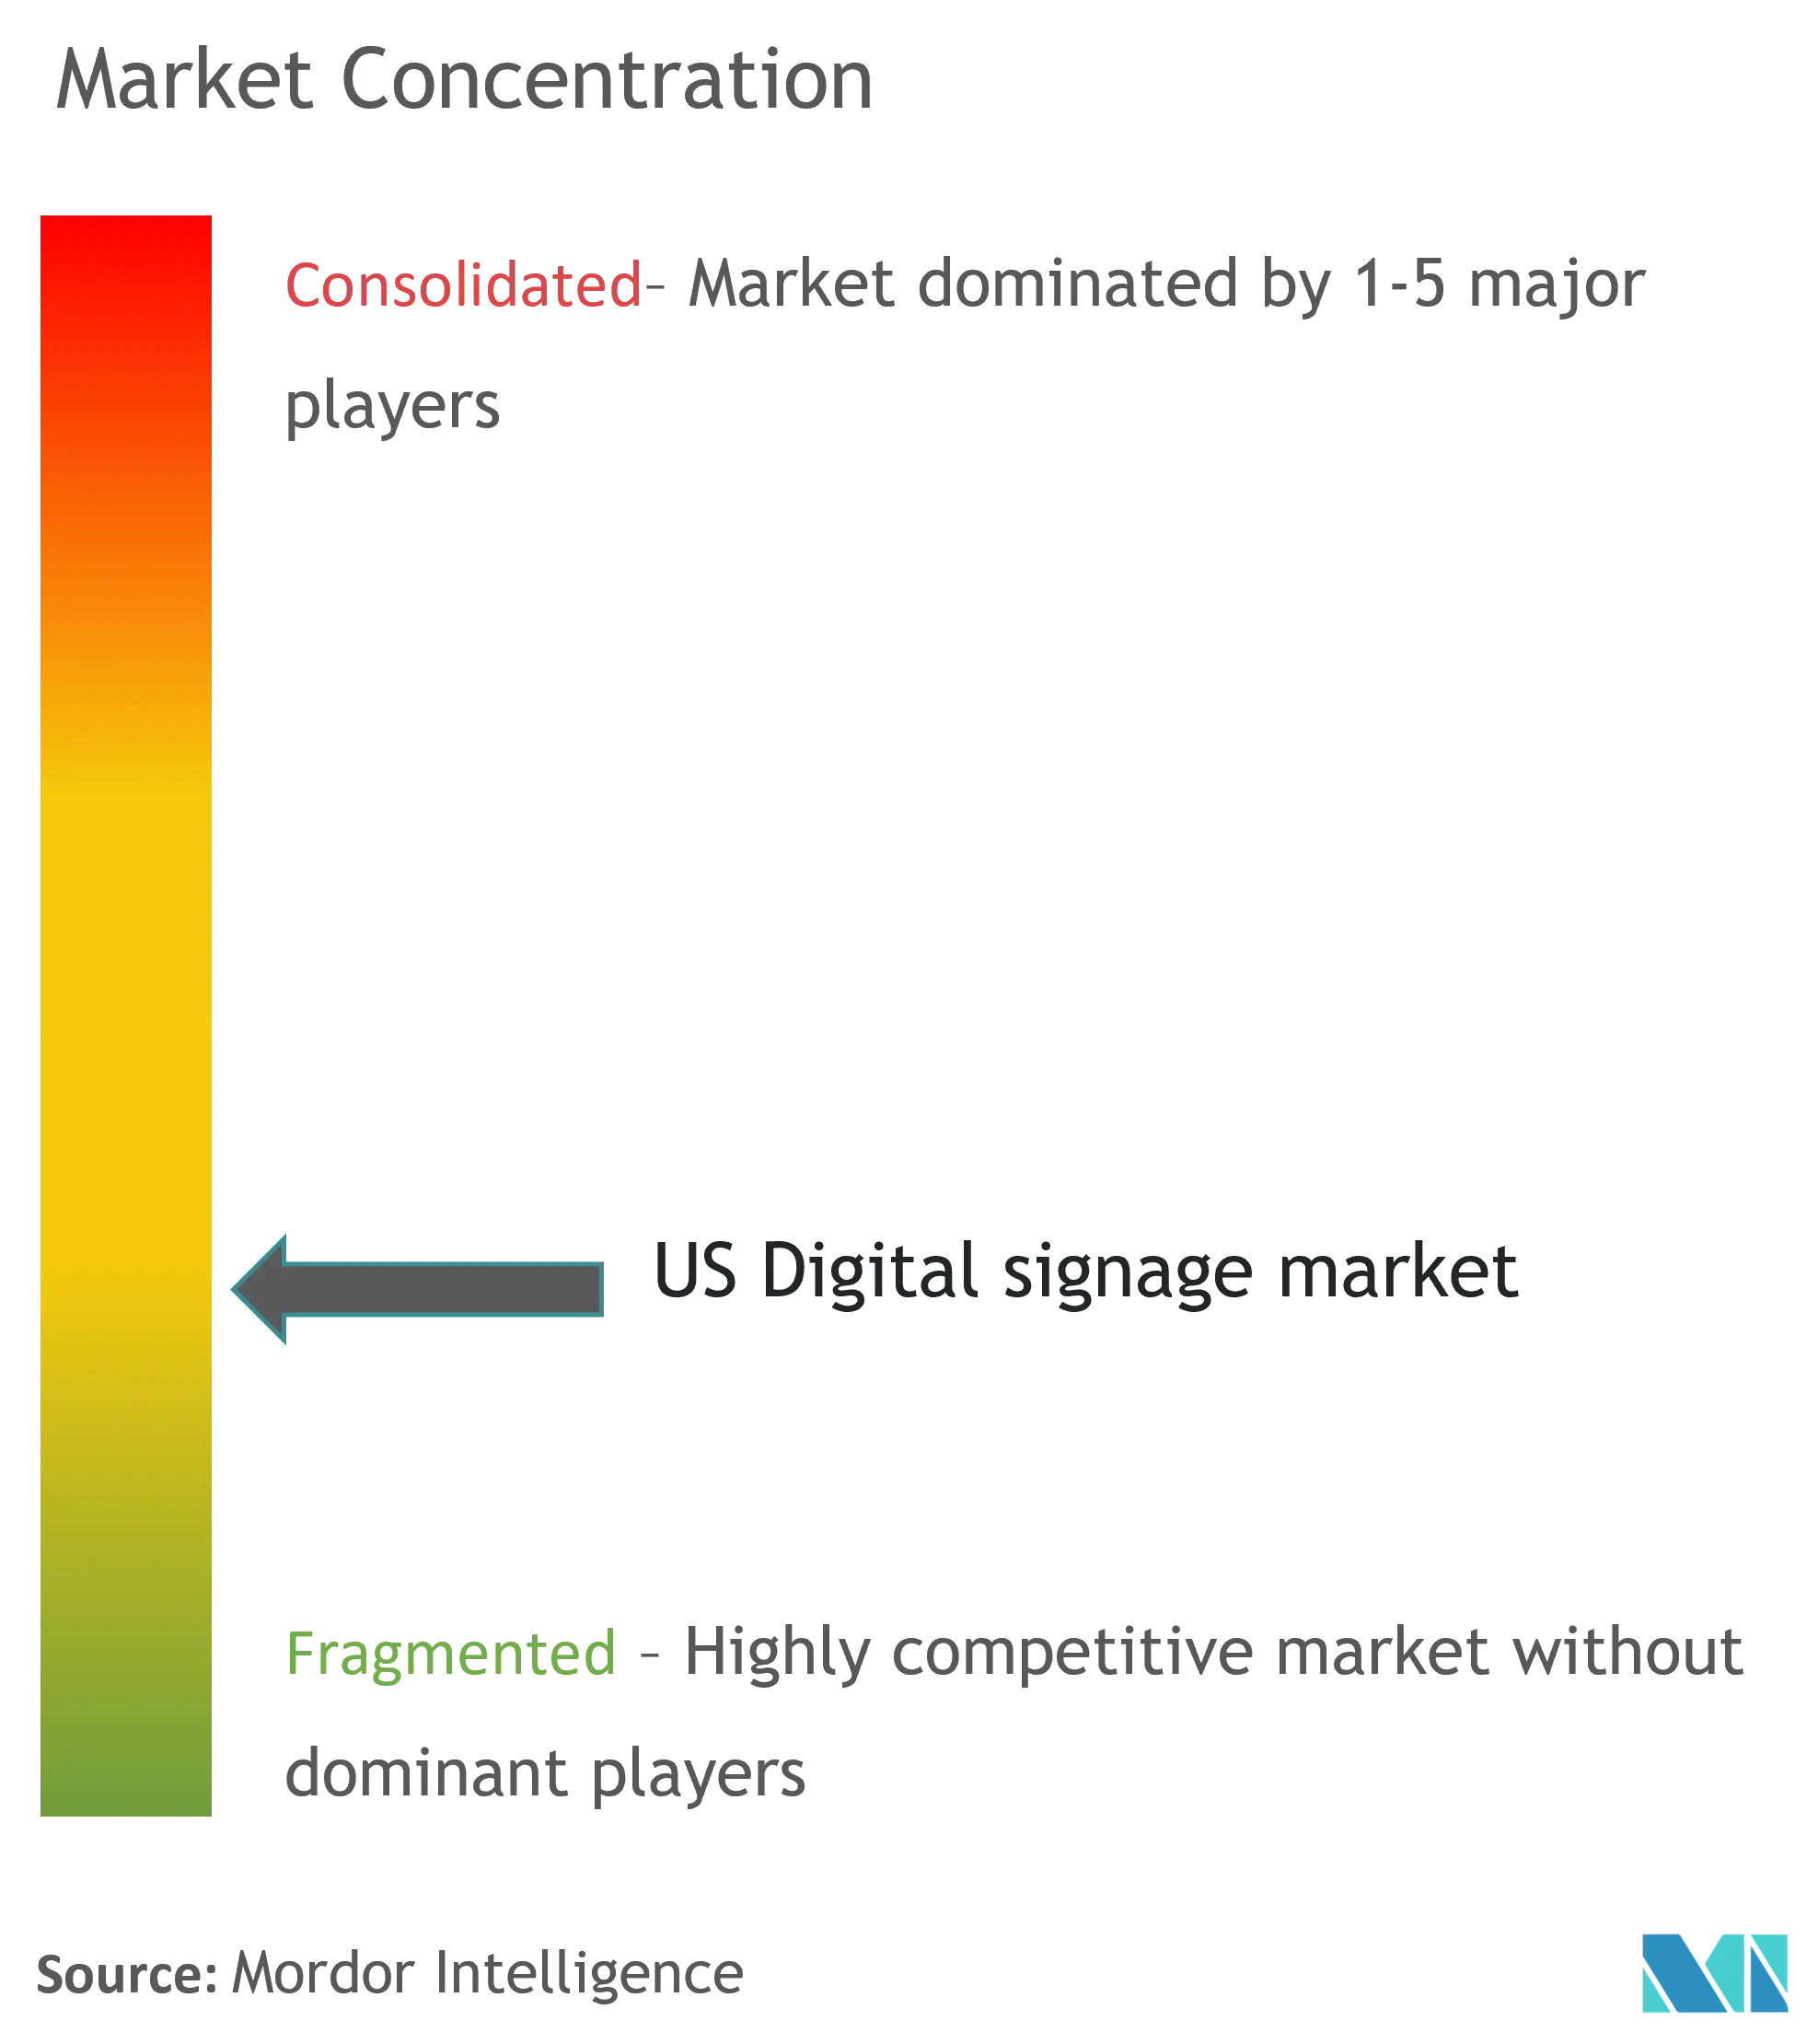 US Digital signage market - Market Concentration.png